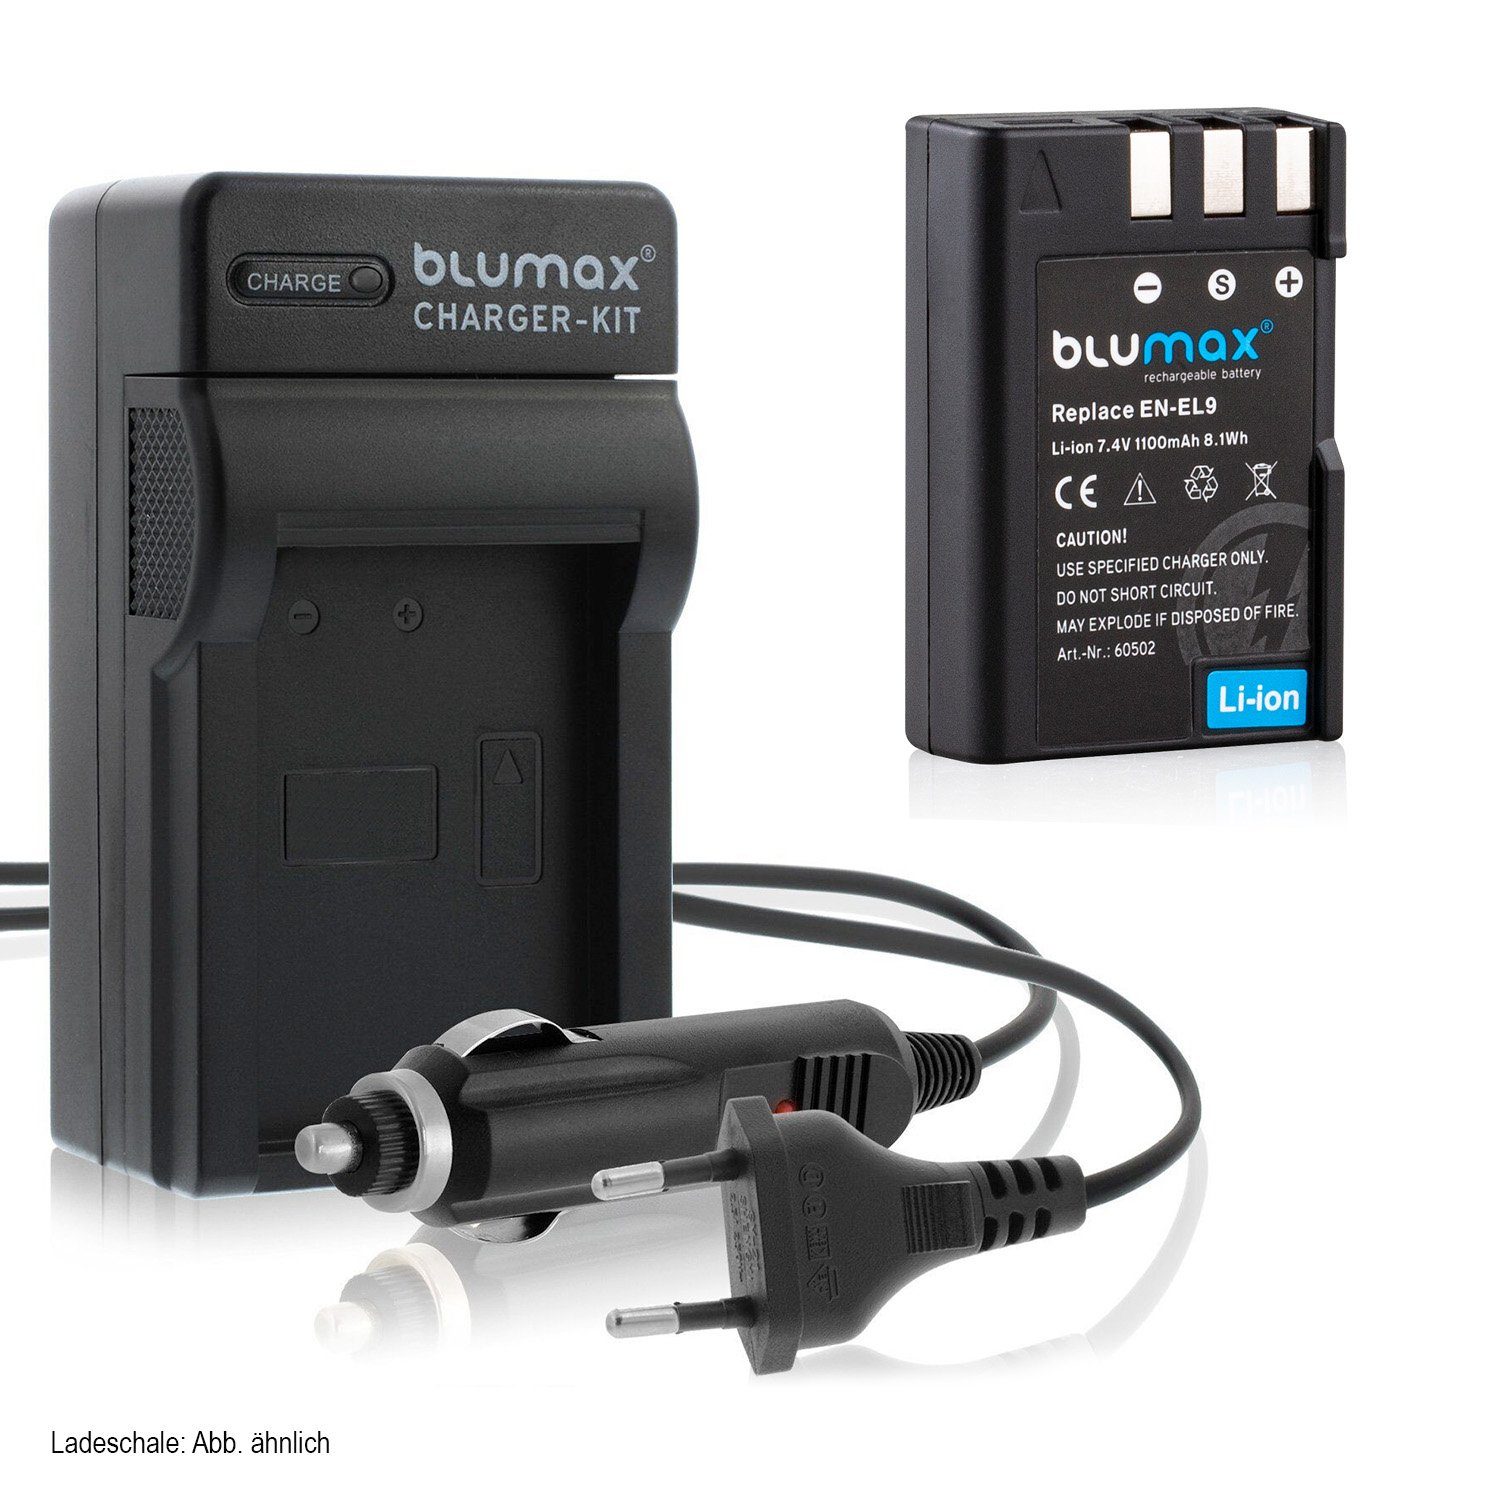 Blumax Set mit Lader für Nikon EN-EL9 DSLR D60,D5000 1100mAh  Kamera-Ladegerät